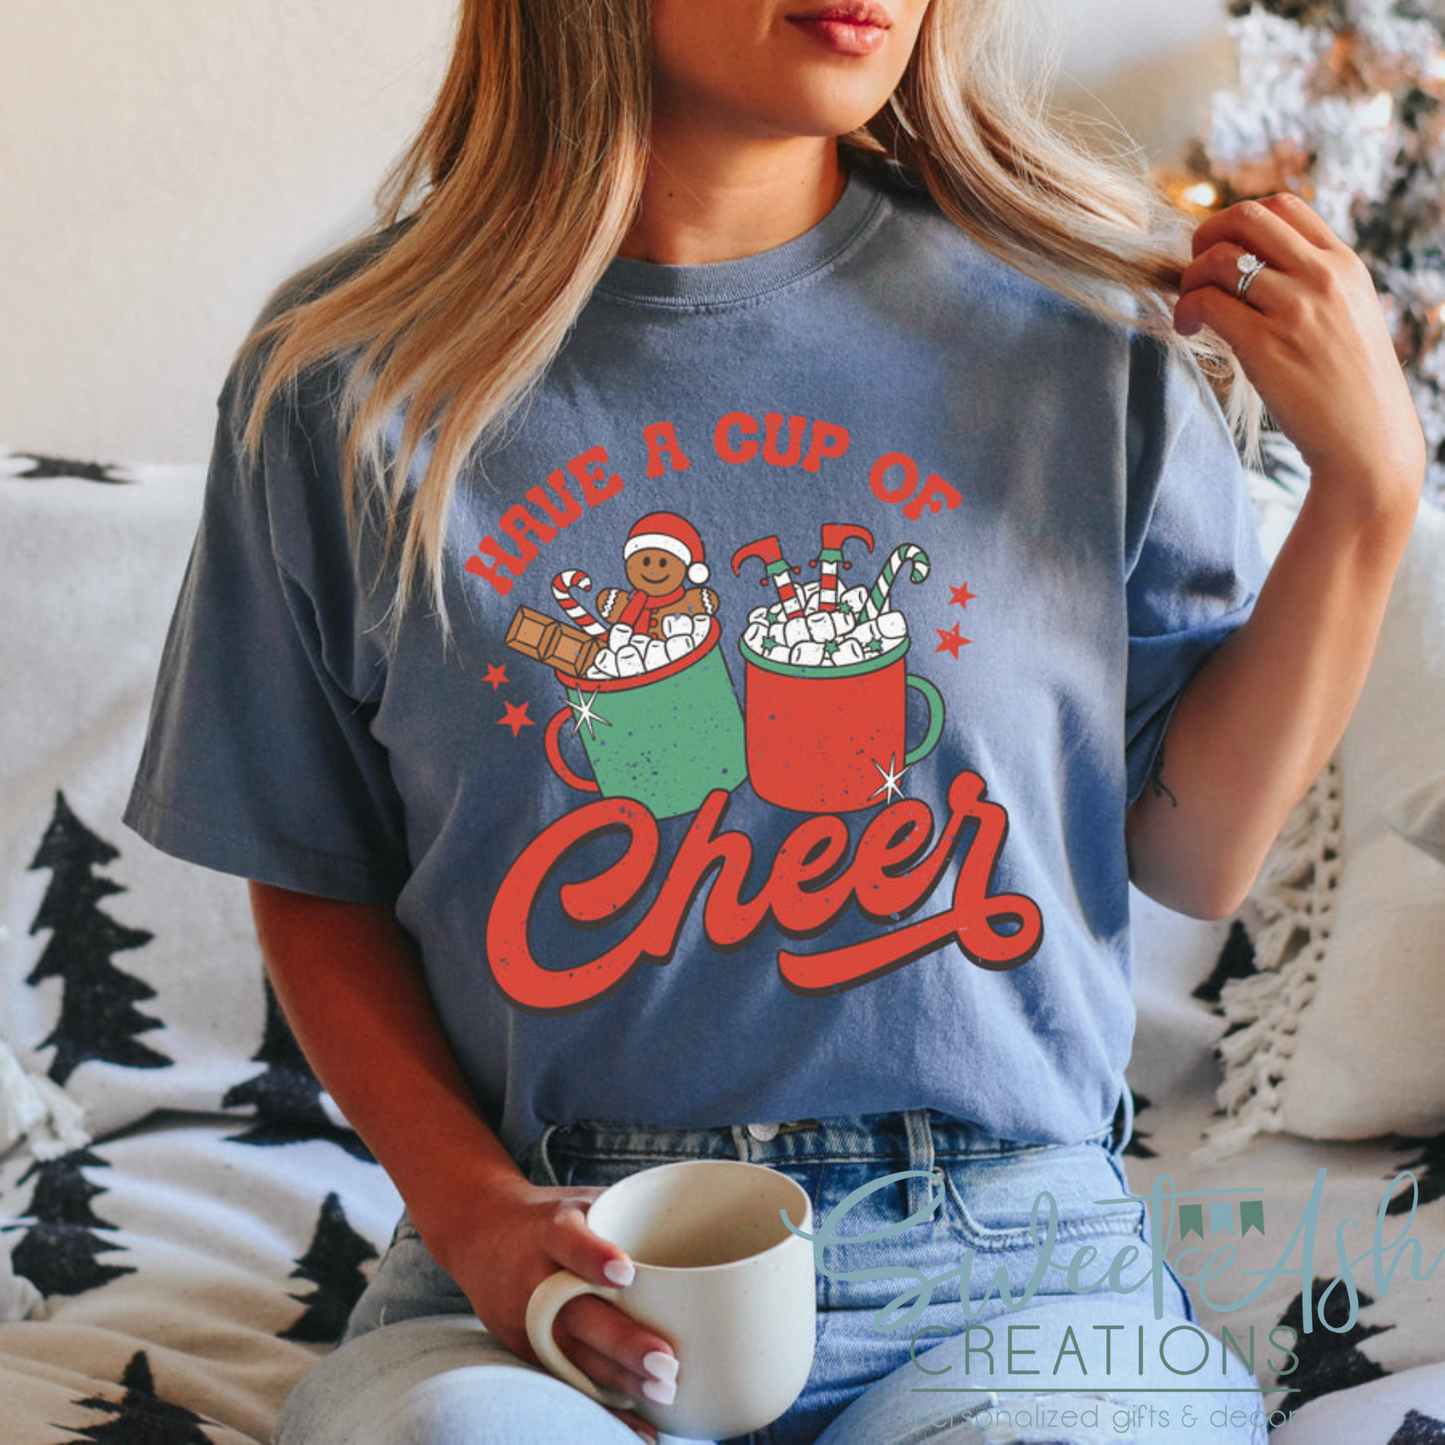 Have a Cup of Cheer Crewneck Sweatshirt